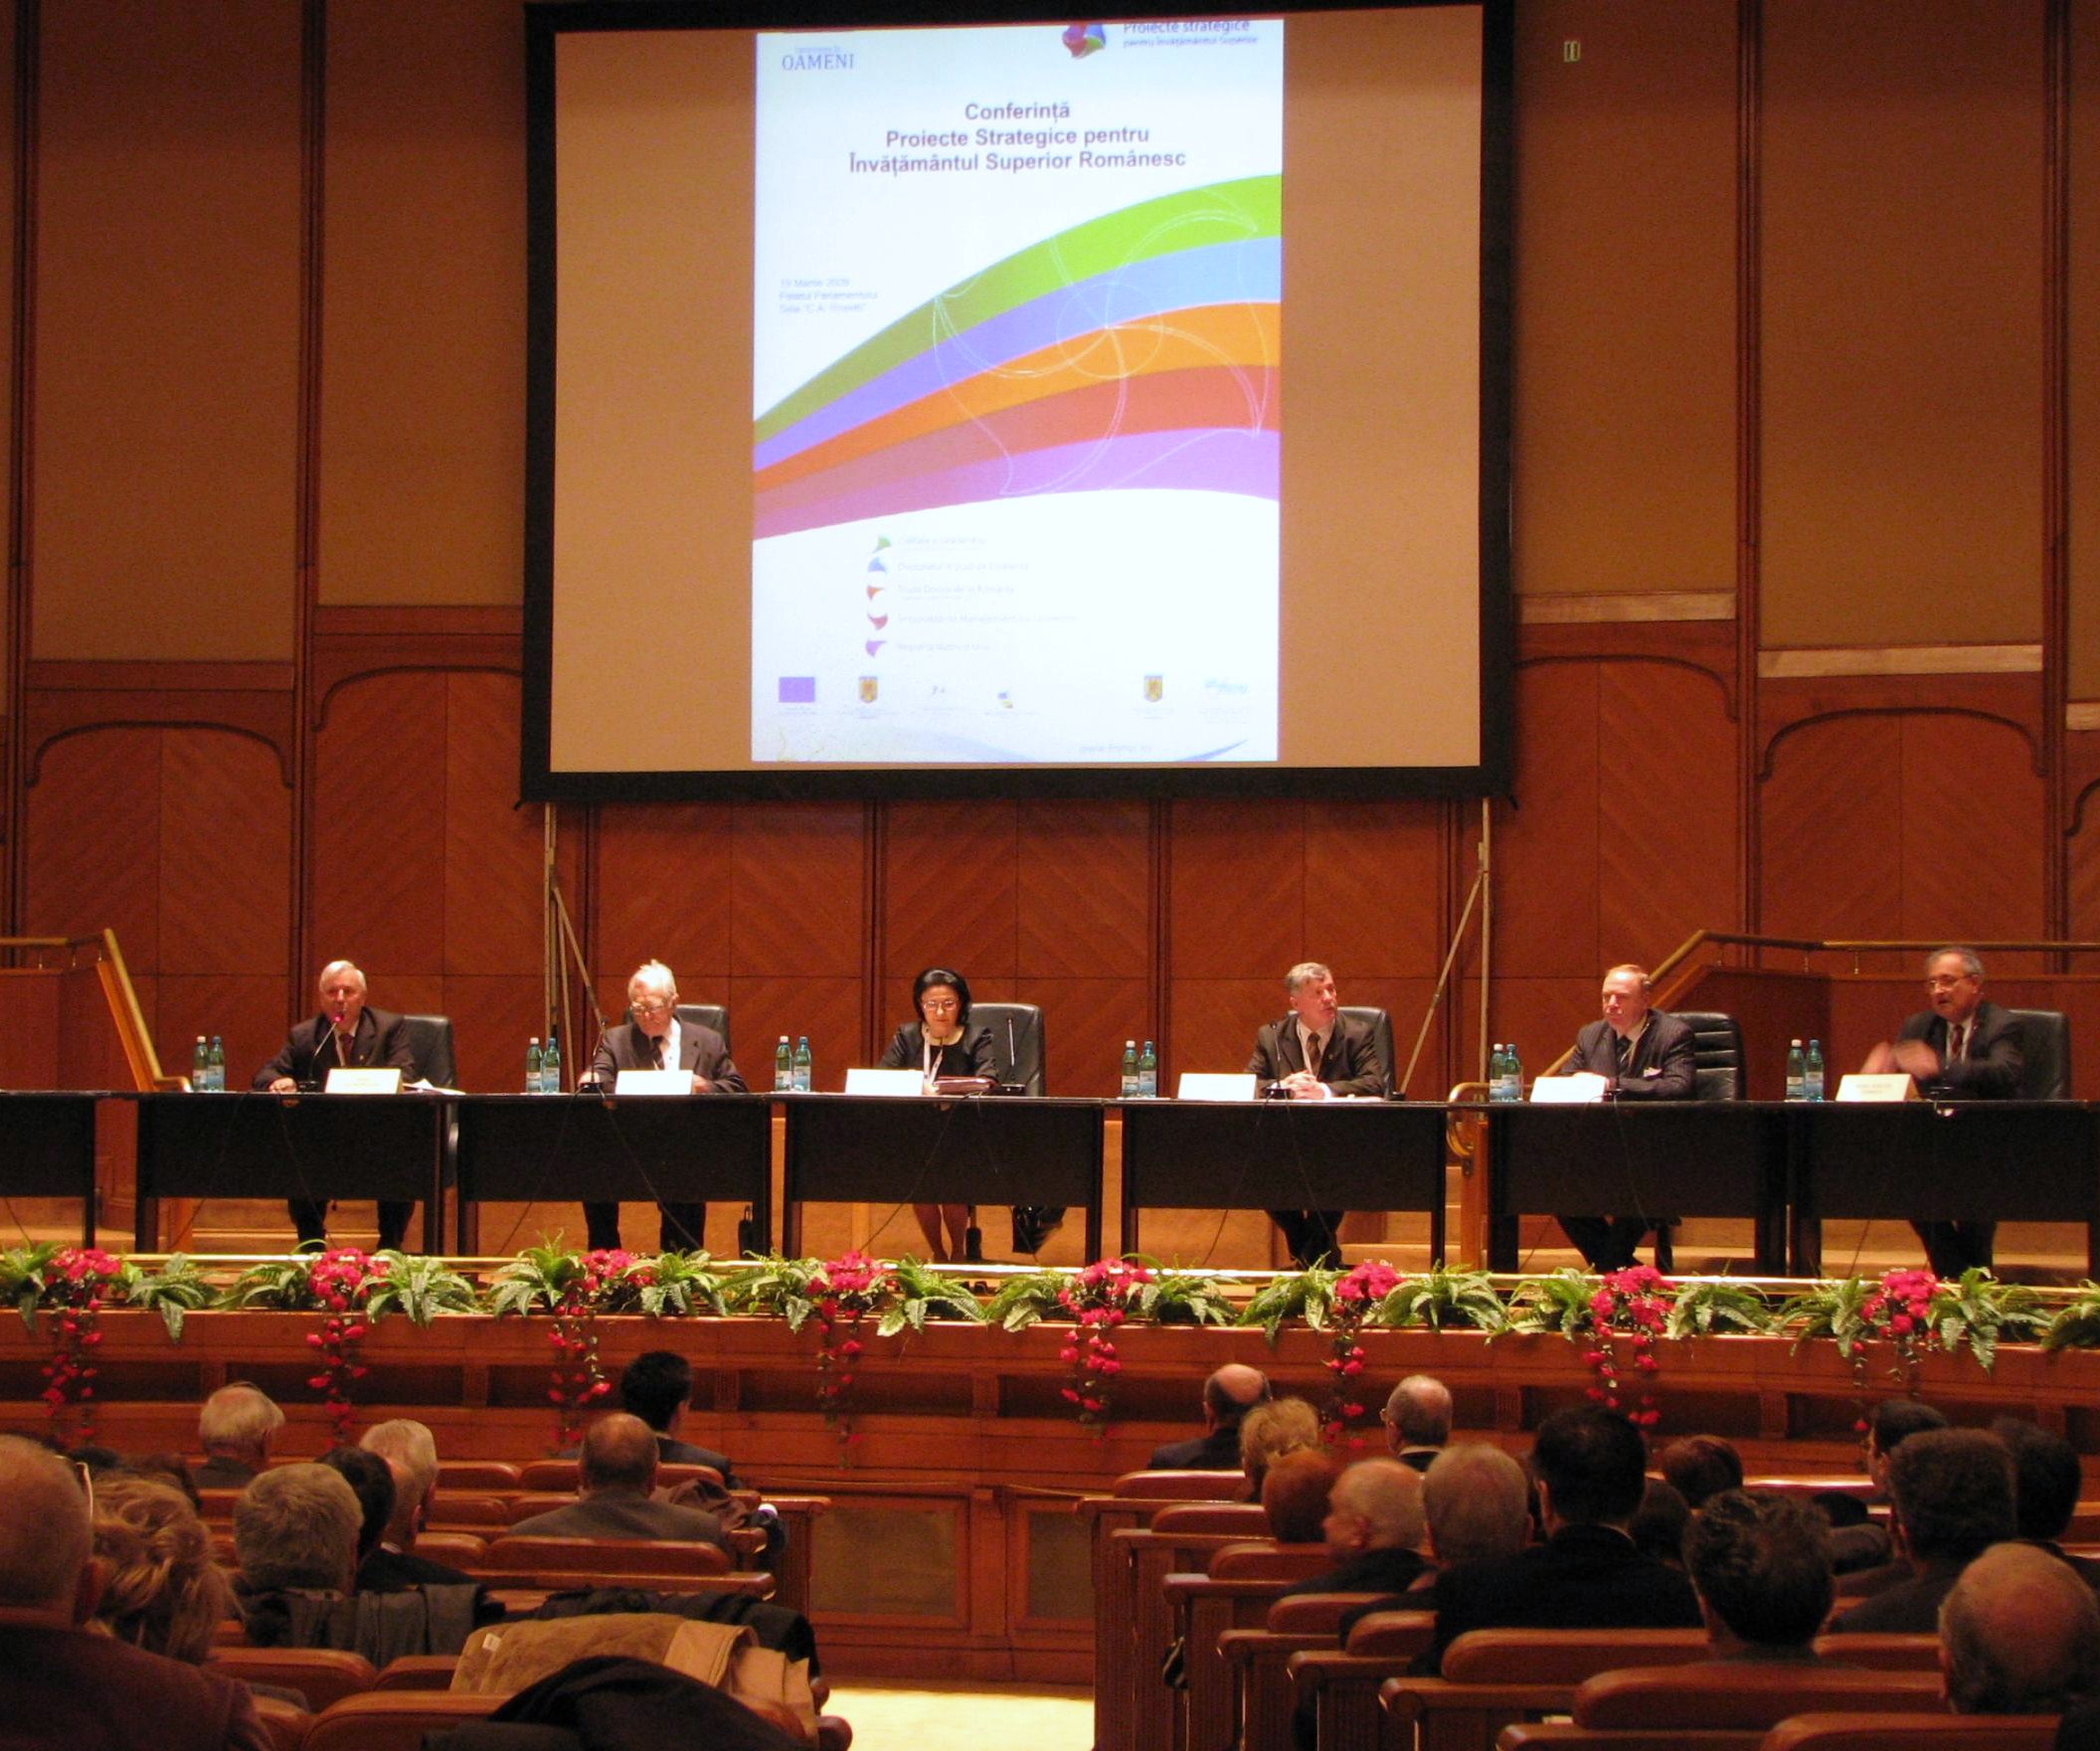  Conferinta de lansare a celor 5 proiecte strategice pentru invatamantul superior romanesc coordonate de UEFISCSU